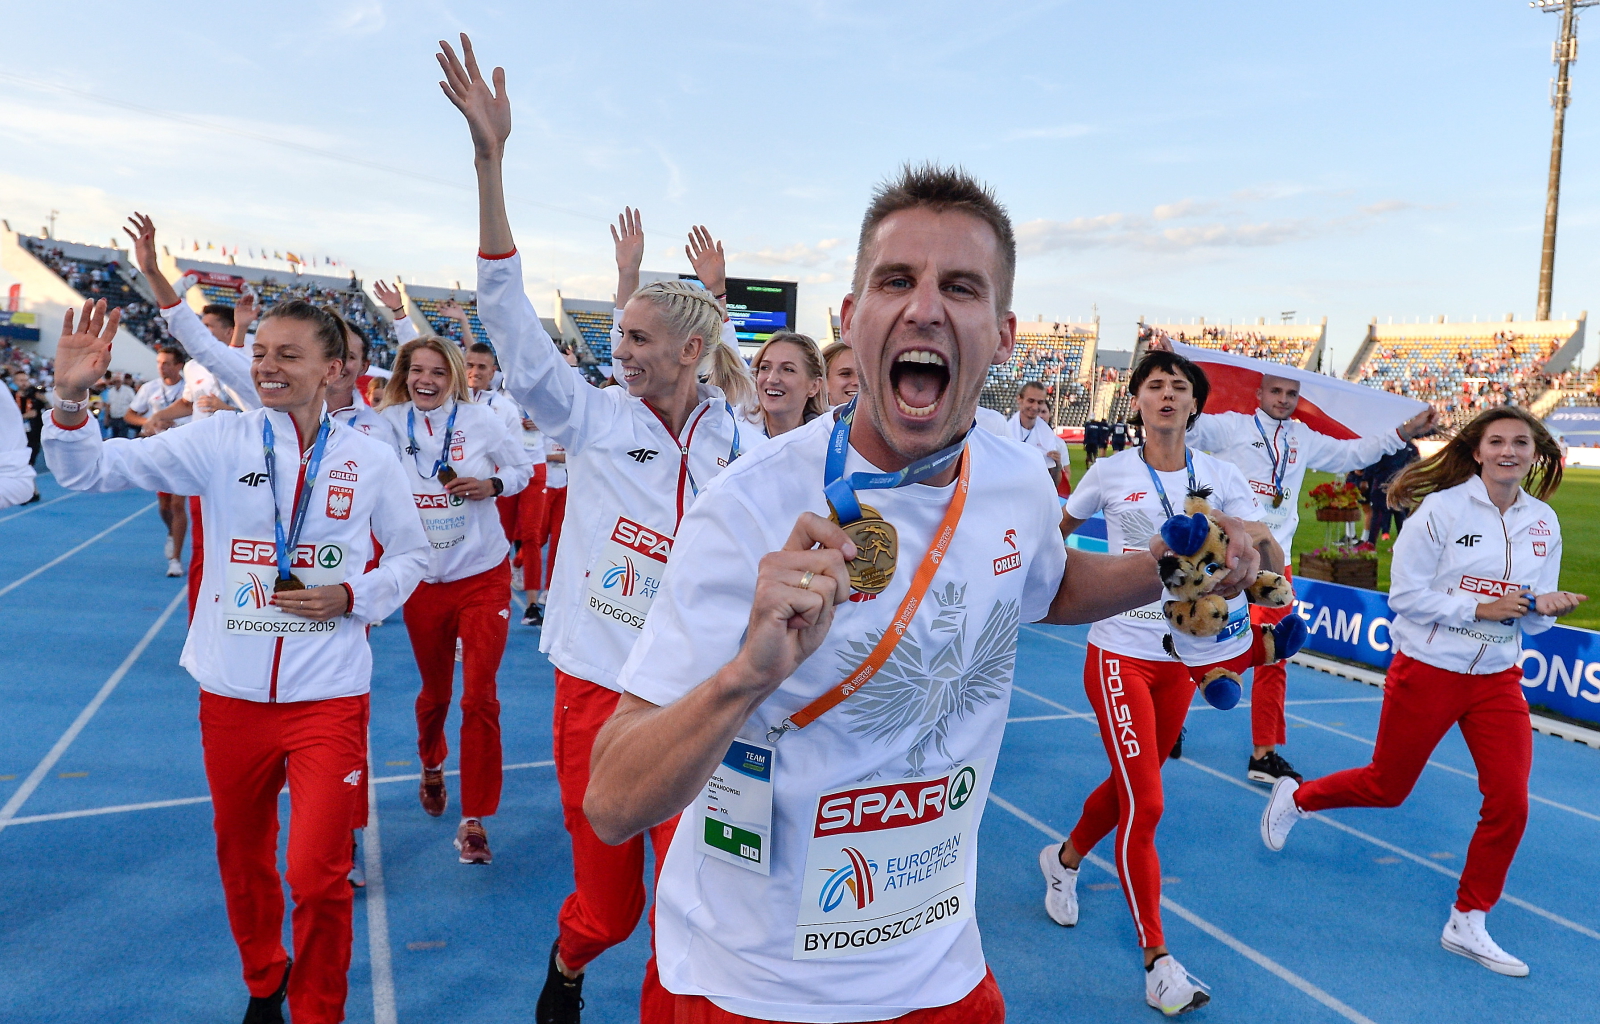 Polscy lekkoatleci zwyciężyli w Drużynowych Mistrzostwach Europy PAP/Paweł Skraba